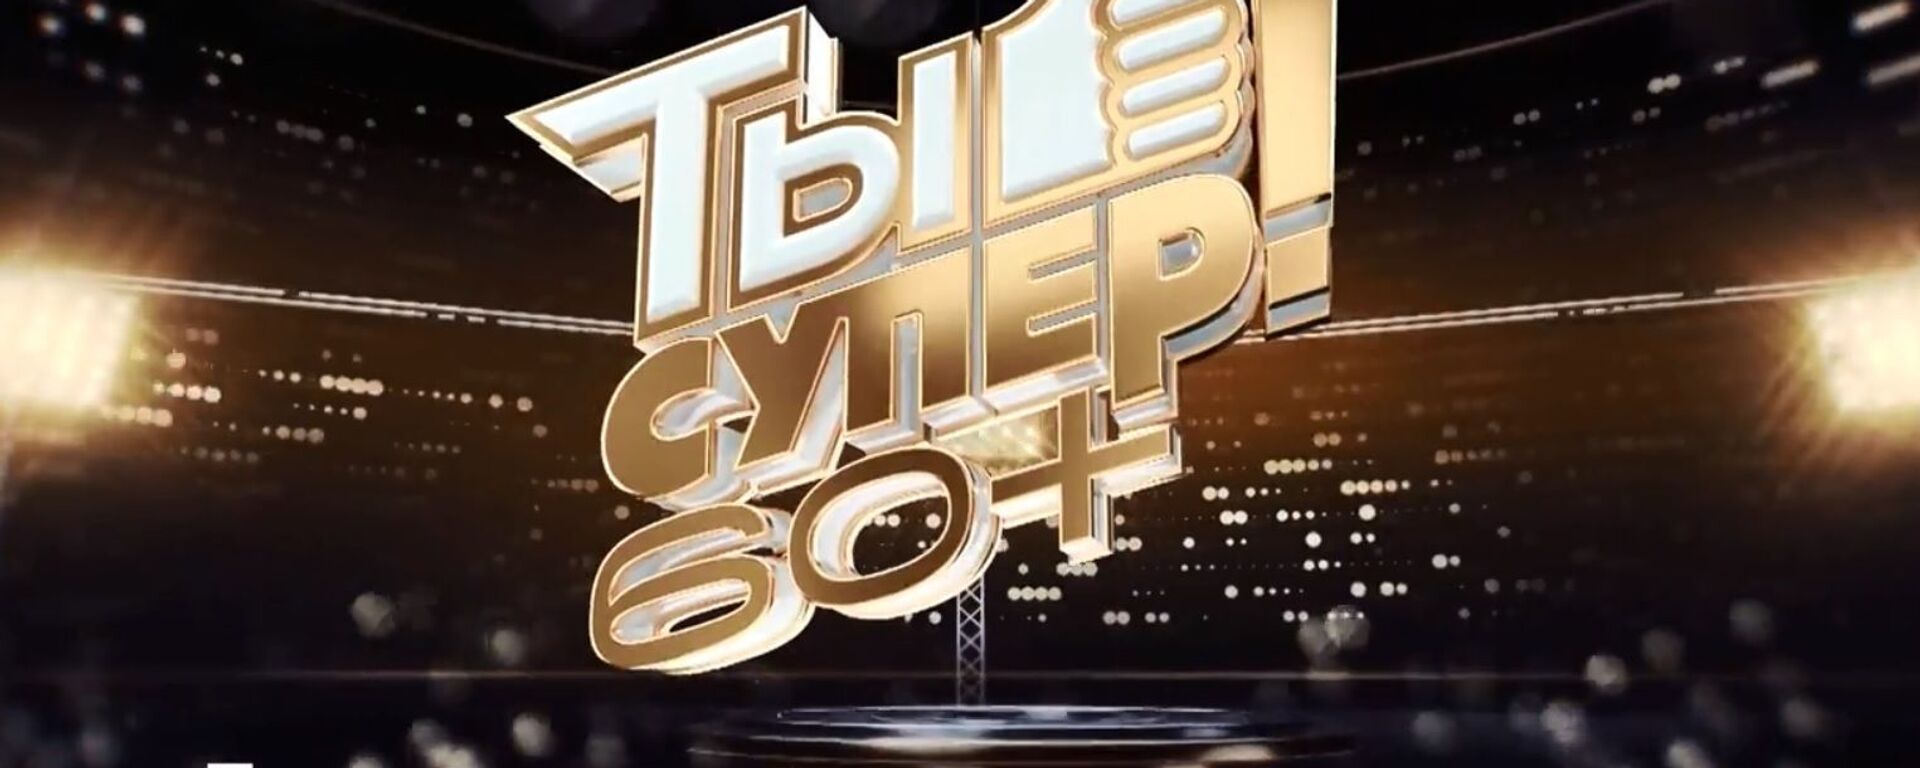 Ты супер 60+, финал – видео - Sputnik Беларусь, 1920, 20.06.2021